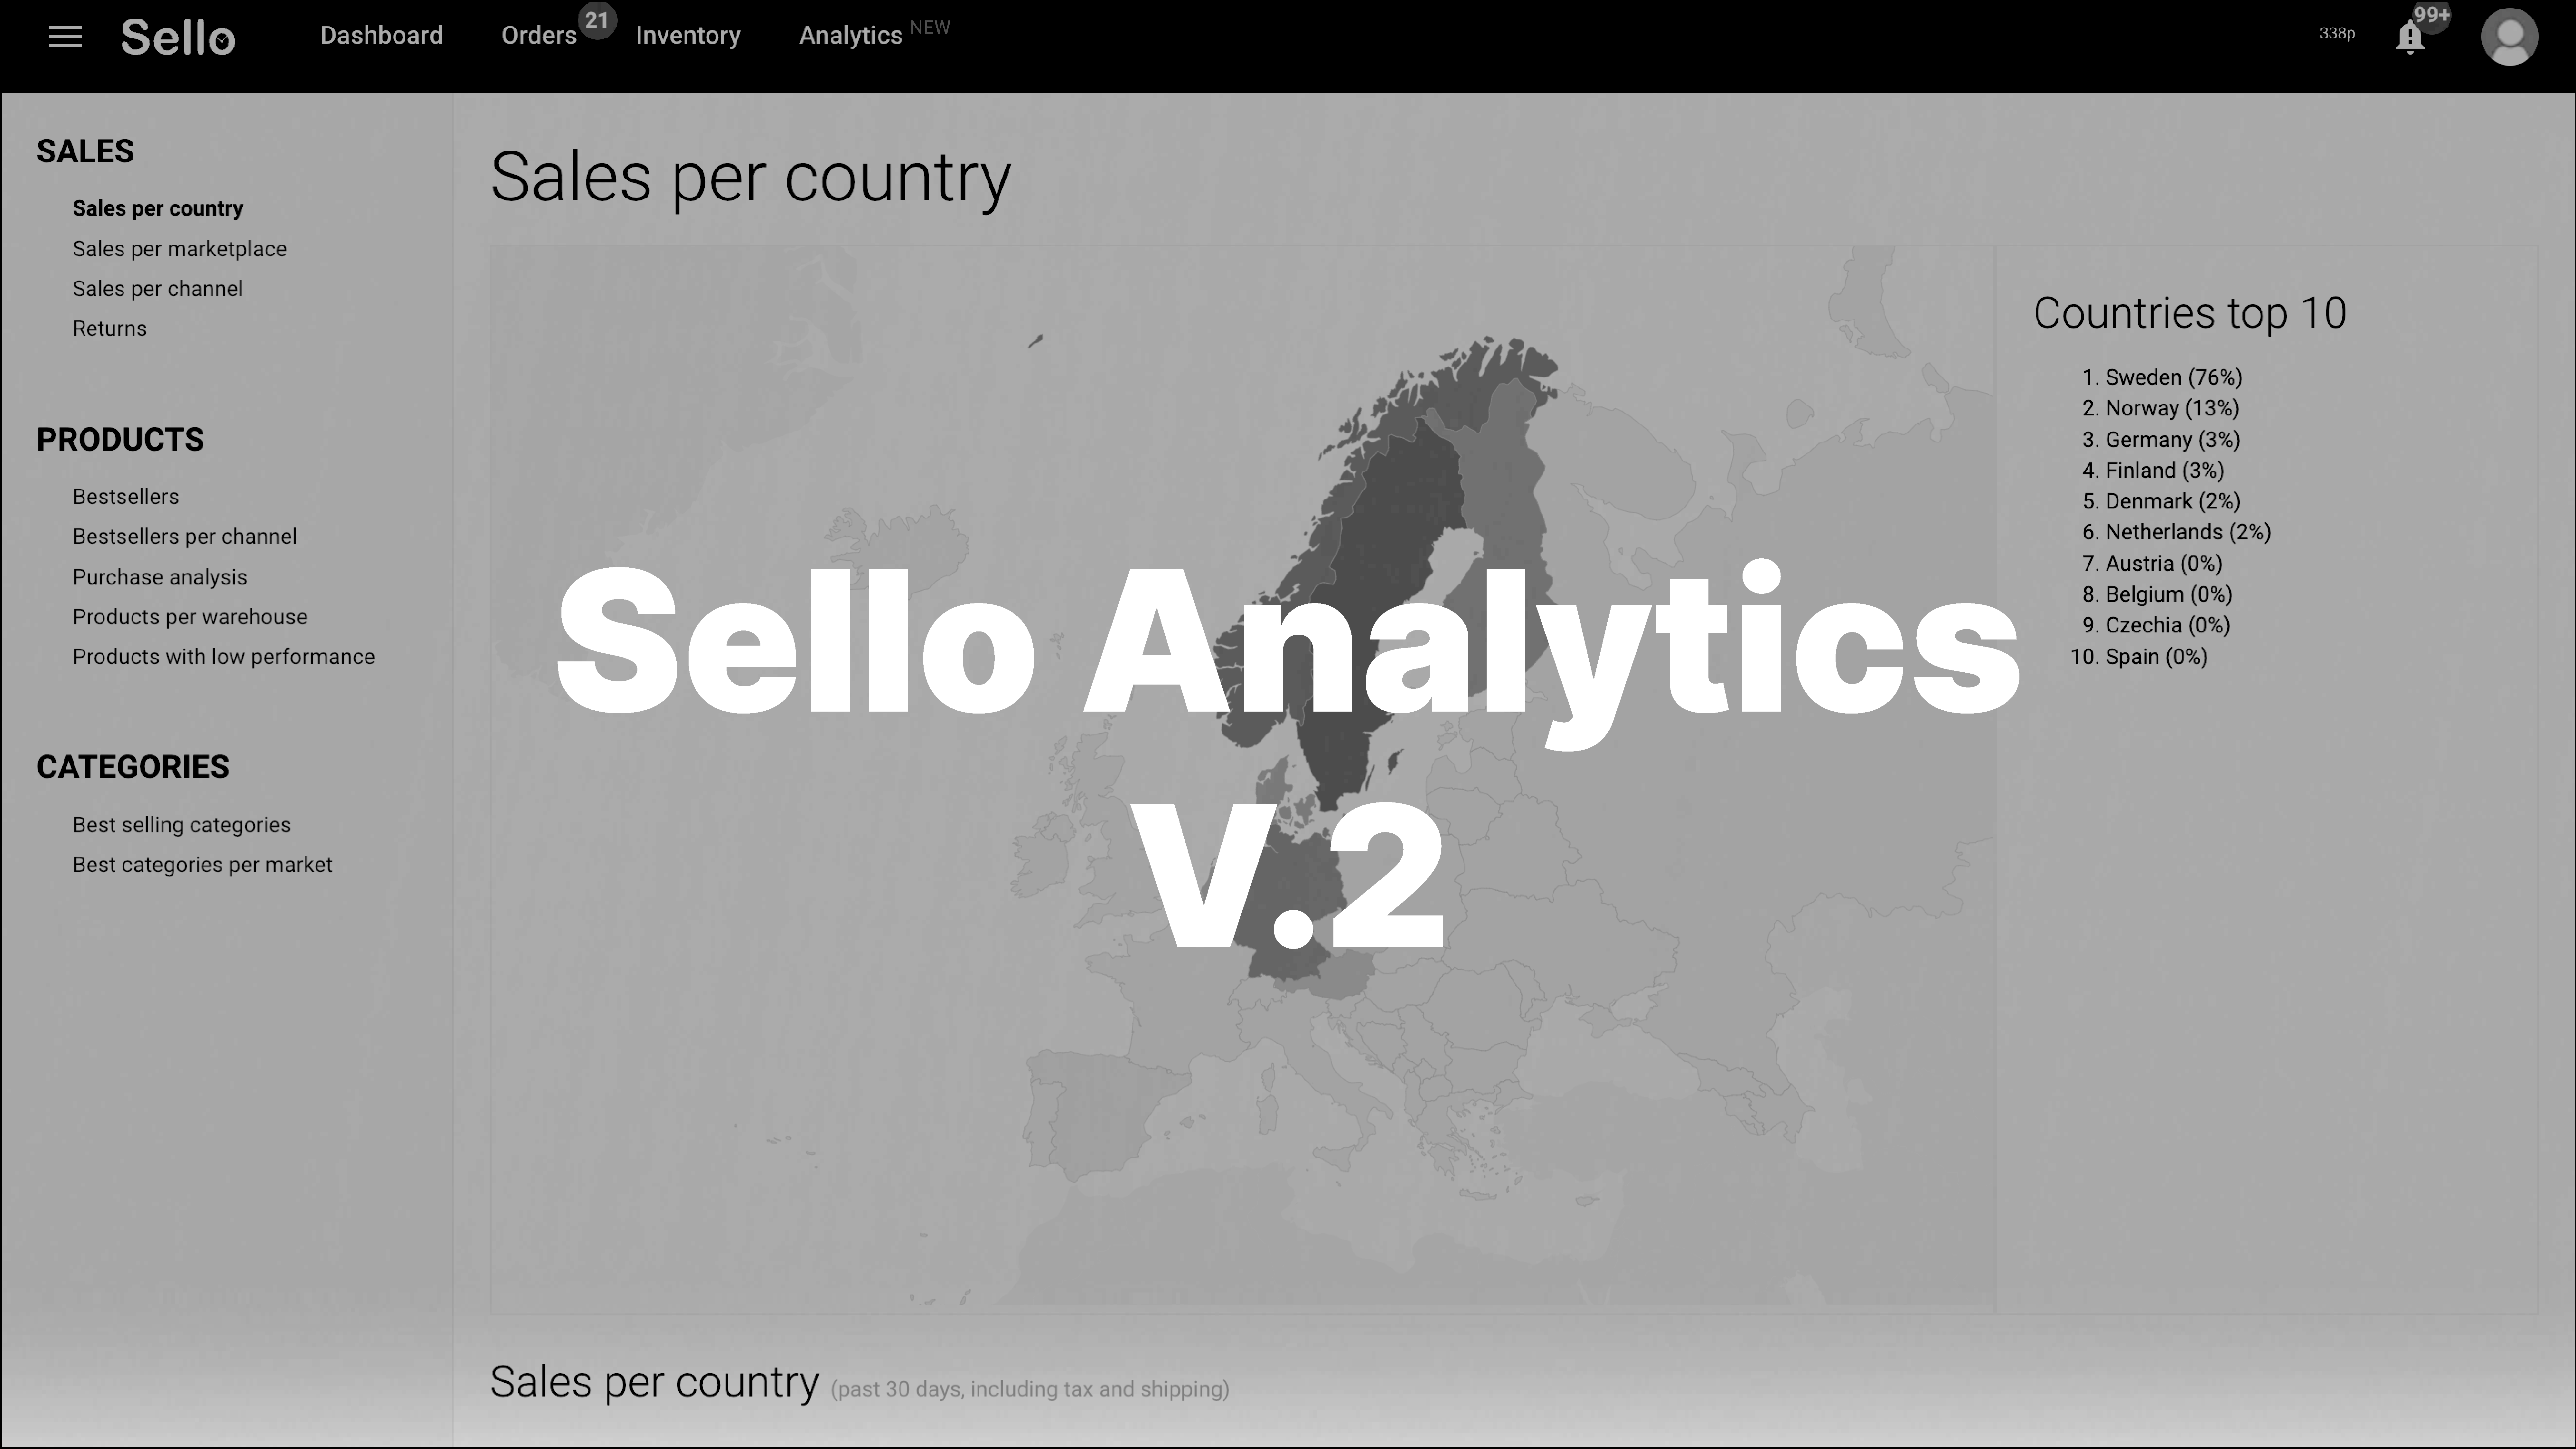 Sello Analytics version 2.